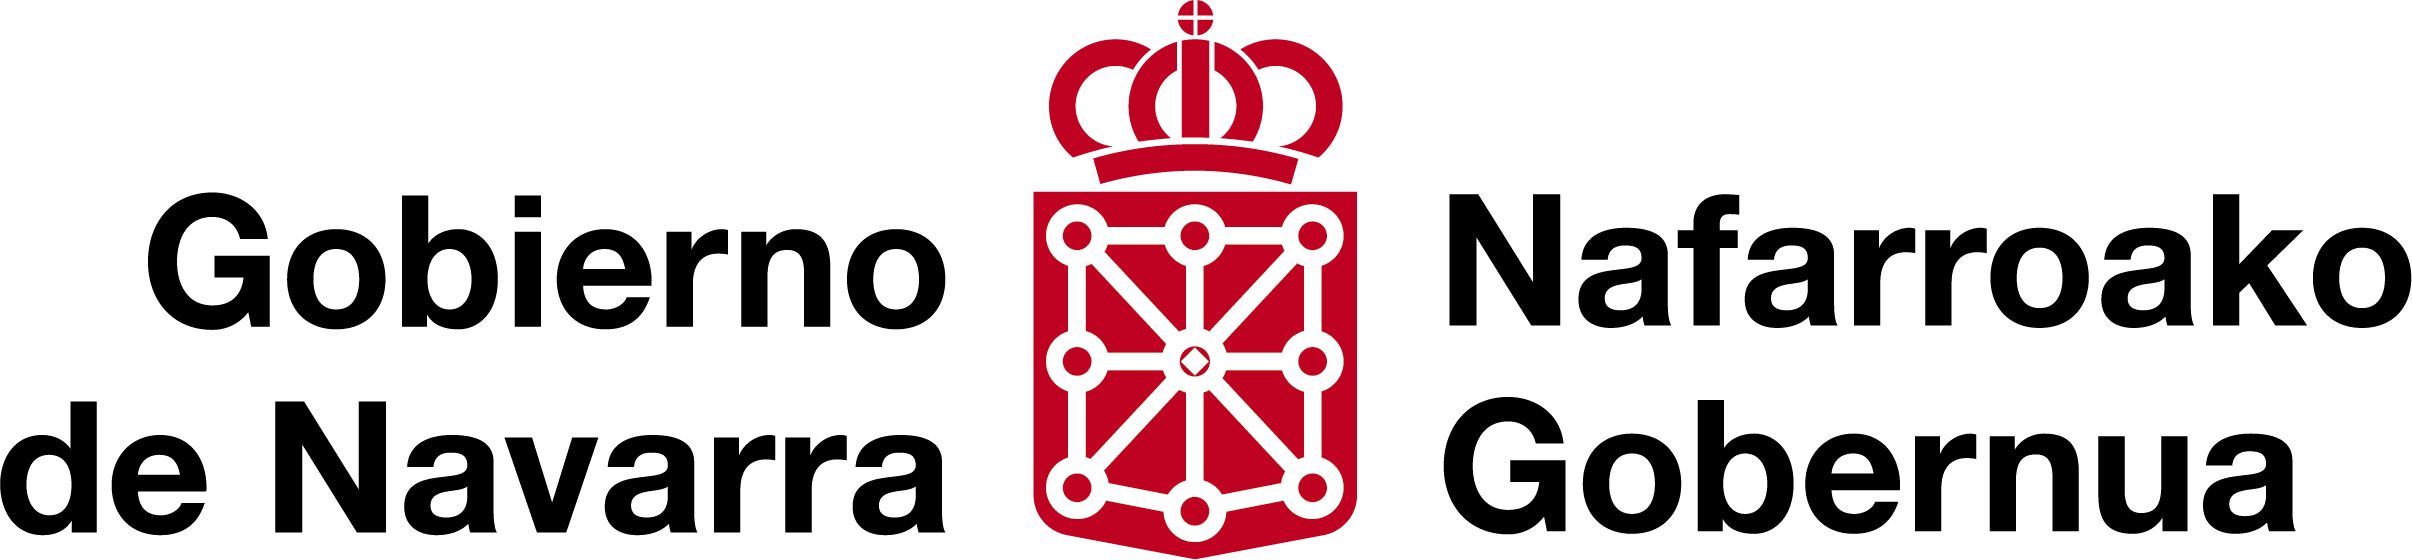 Gobierno de Navarra Nafarroako Gobernua